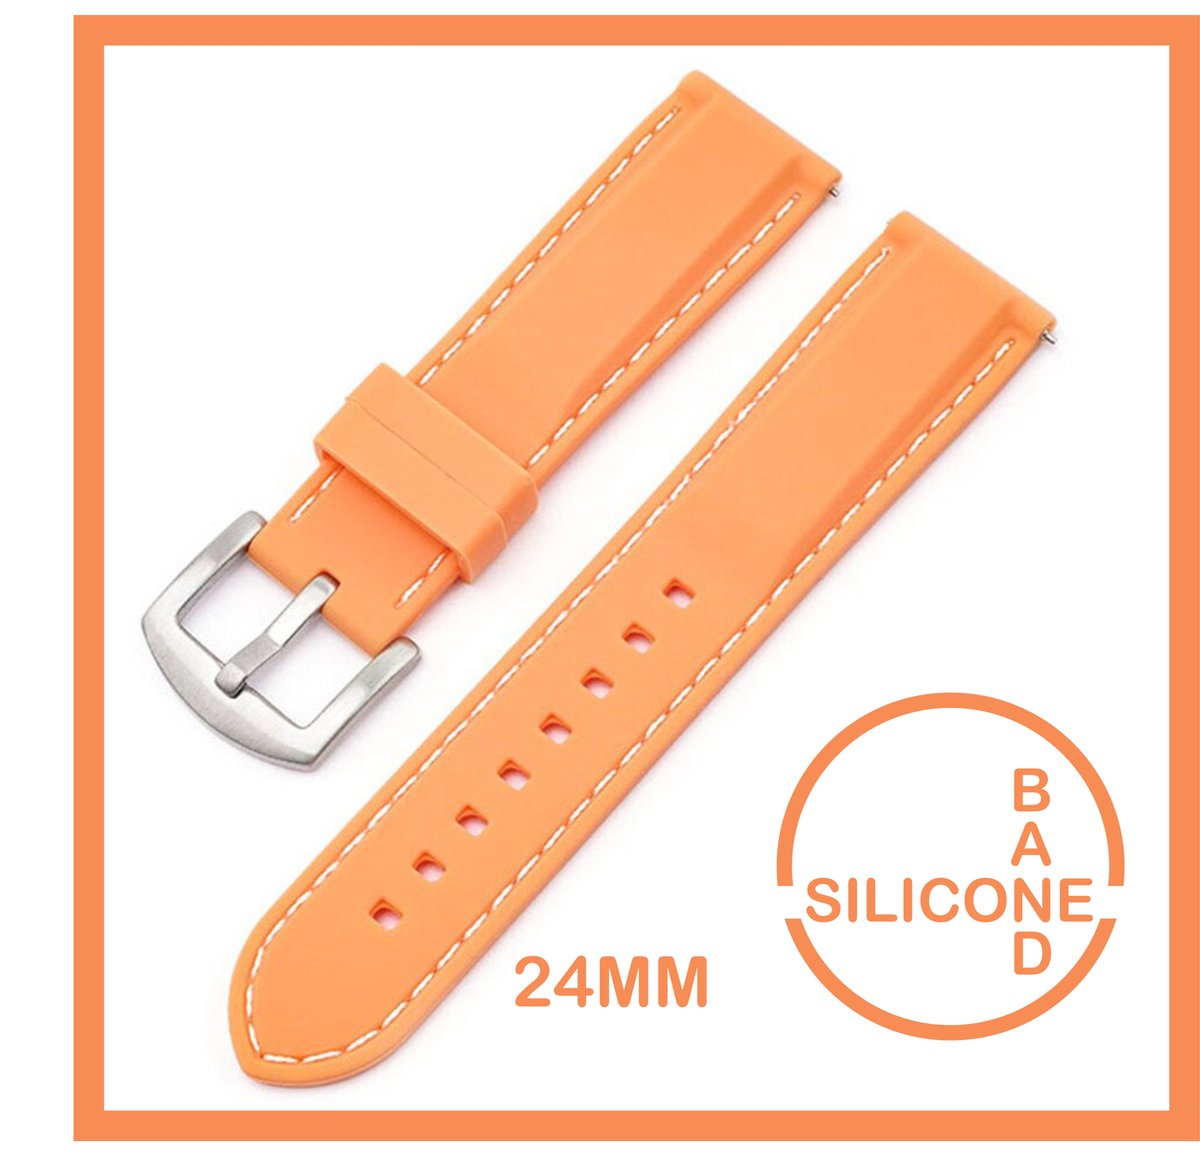 24mm Rubber Siliconen horlogeband Kleur Zalm met witte stiksels passend op o.a Casio Seiko Citizen en alle andere merken - 24 mm Bandje - Horlogebandje horlogeband